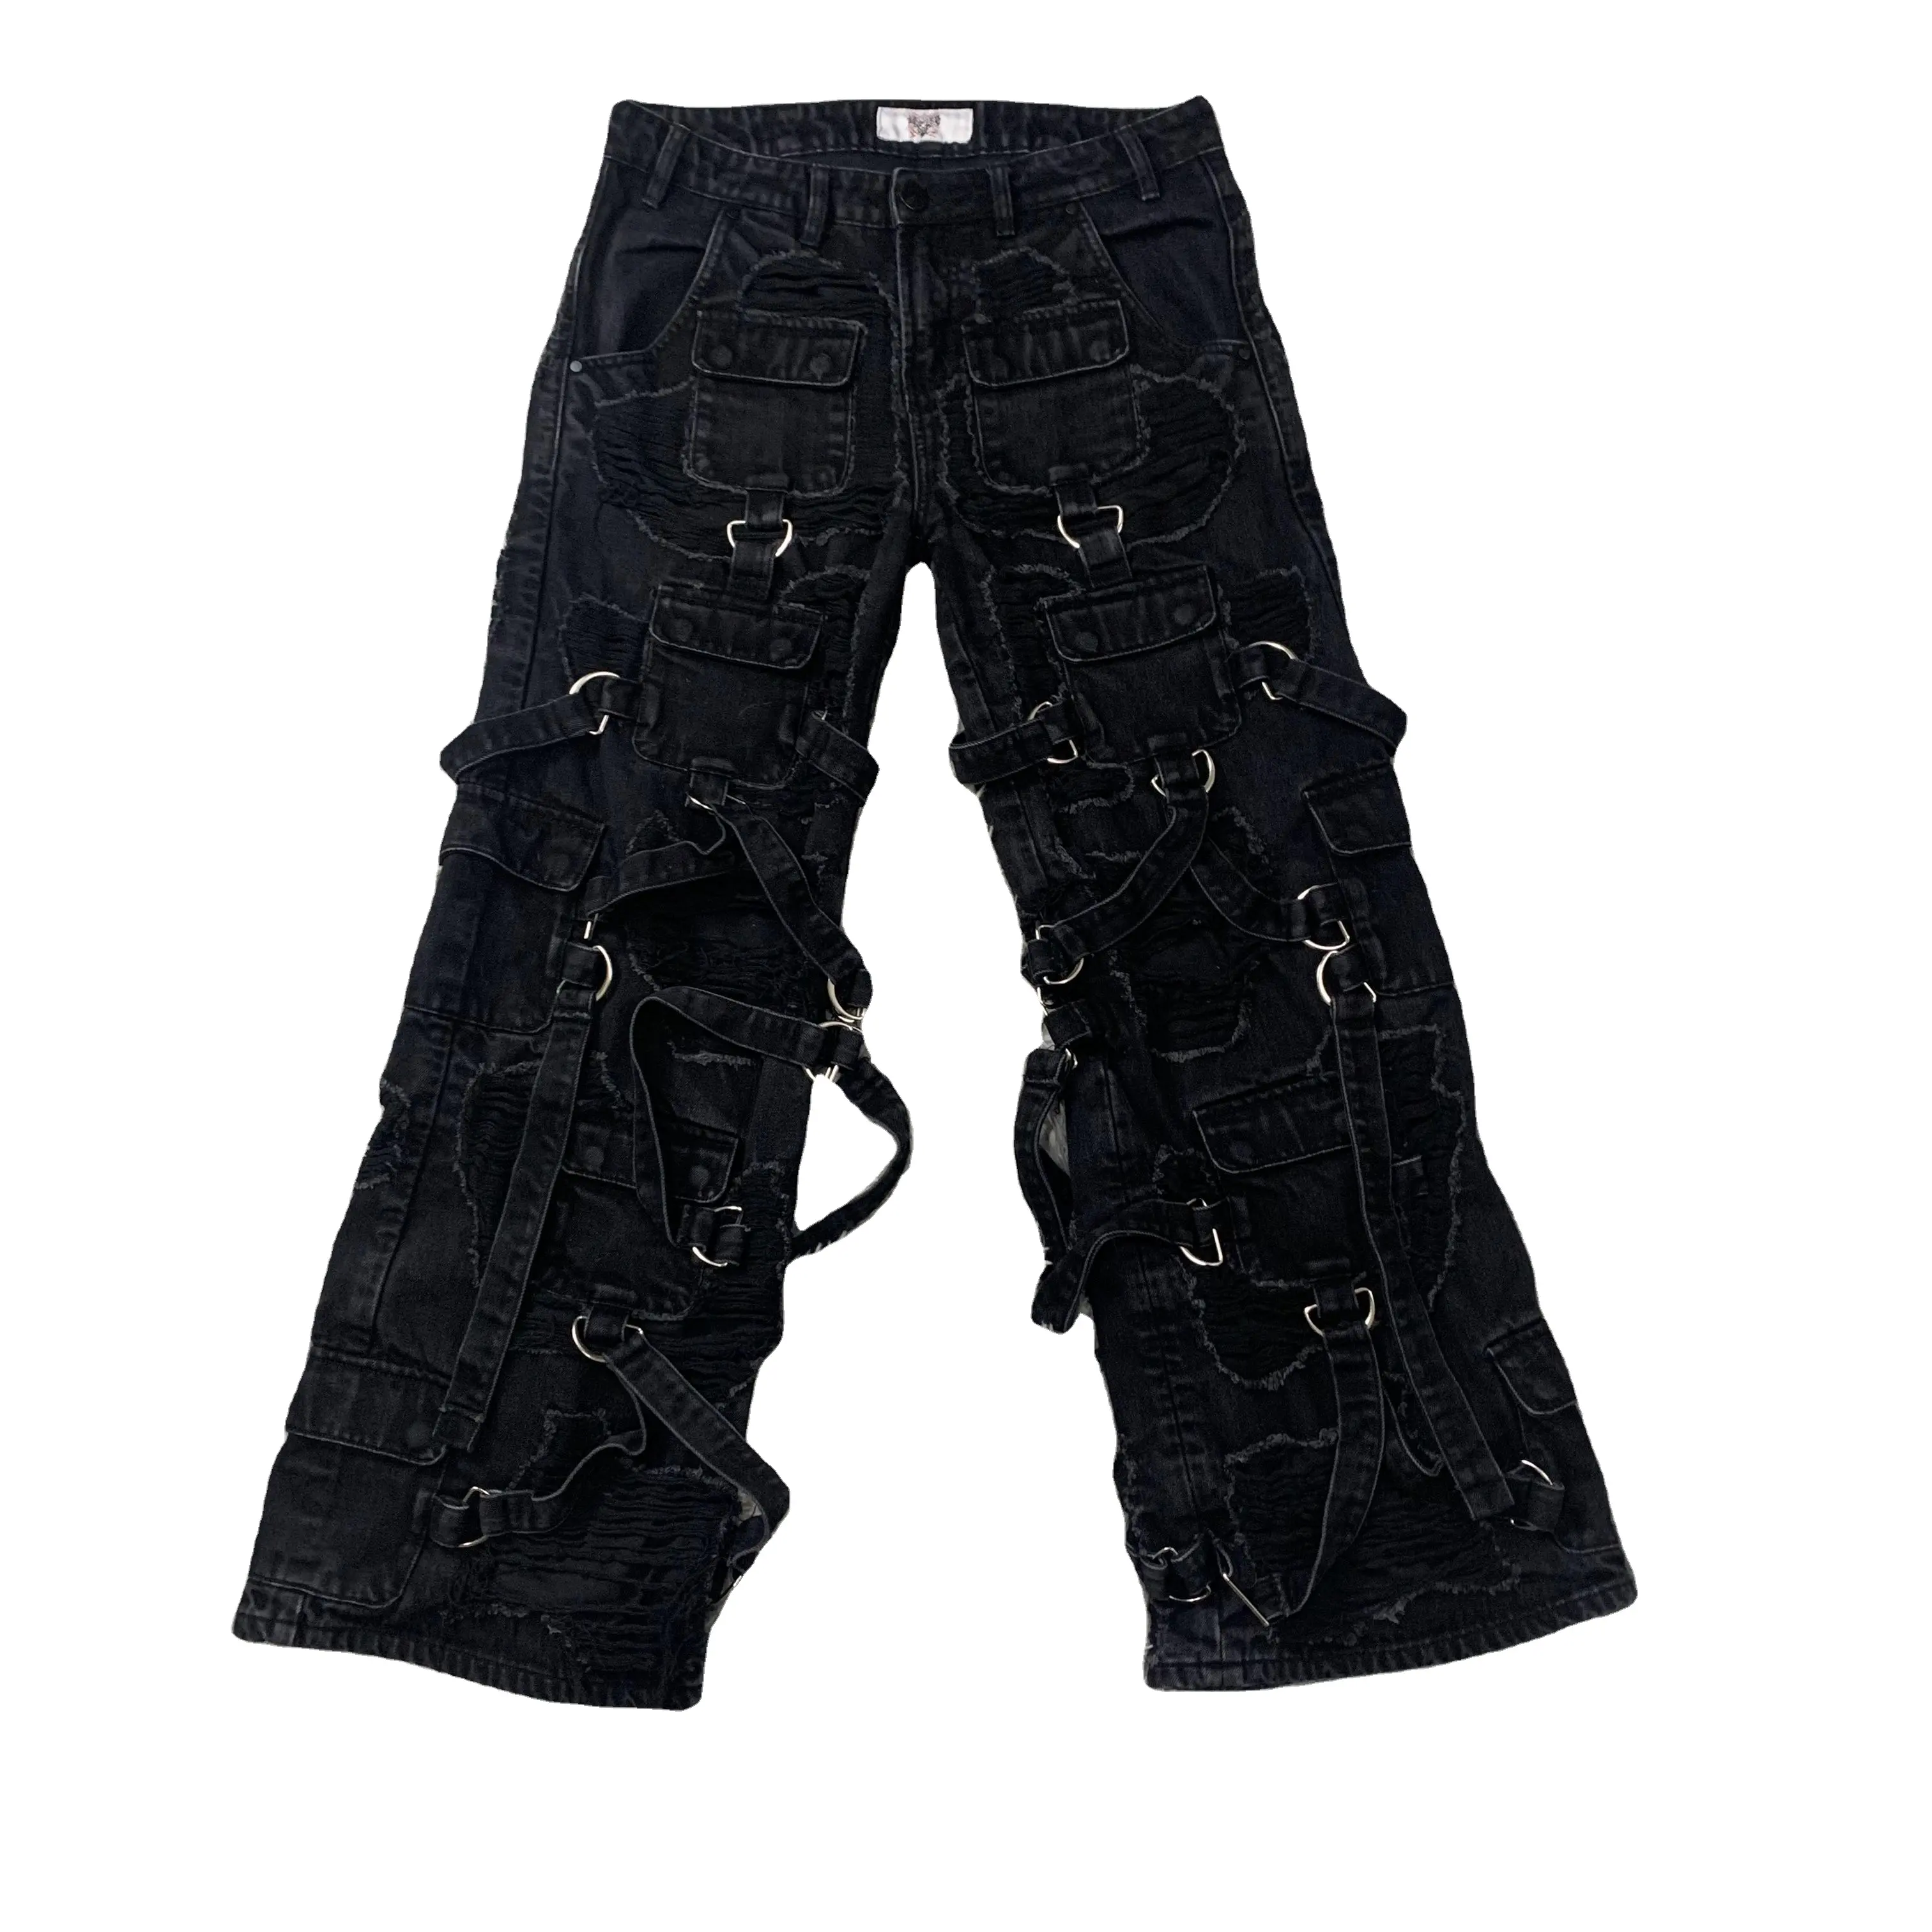 DENIMGUYS Mode Élégant Tendance Designer Noir Strap Décoration Jeans Allover Distressed Jeans Personnalisés Pour Hommes